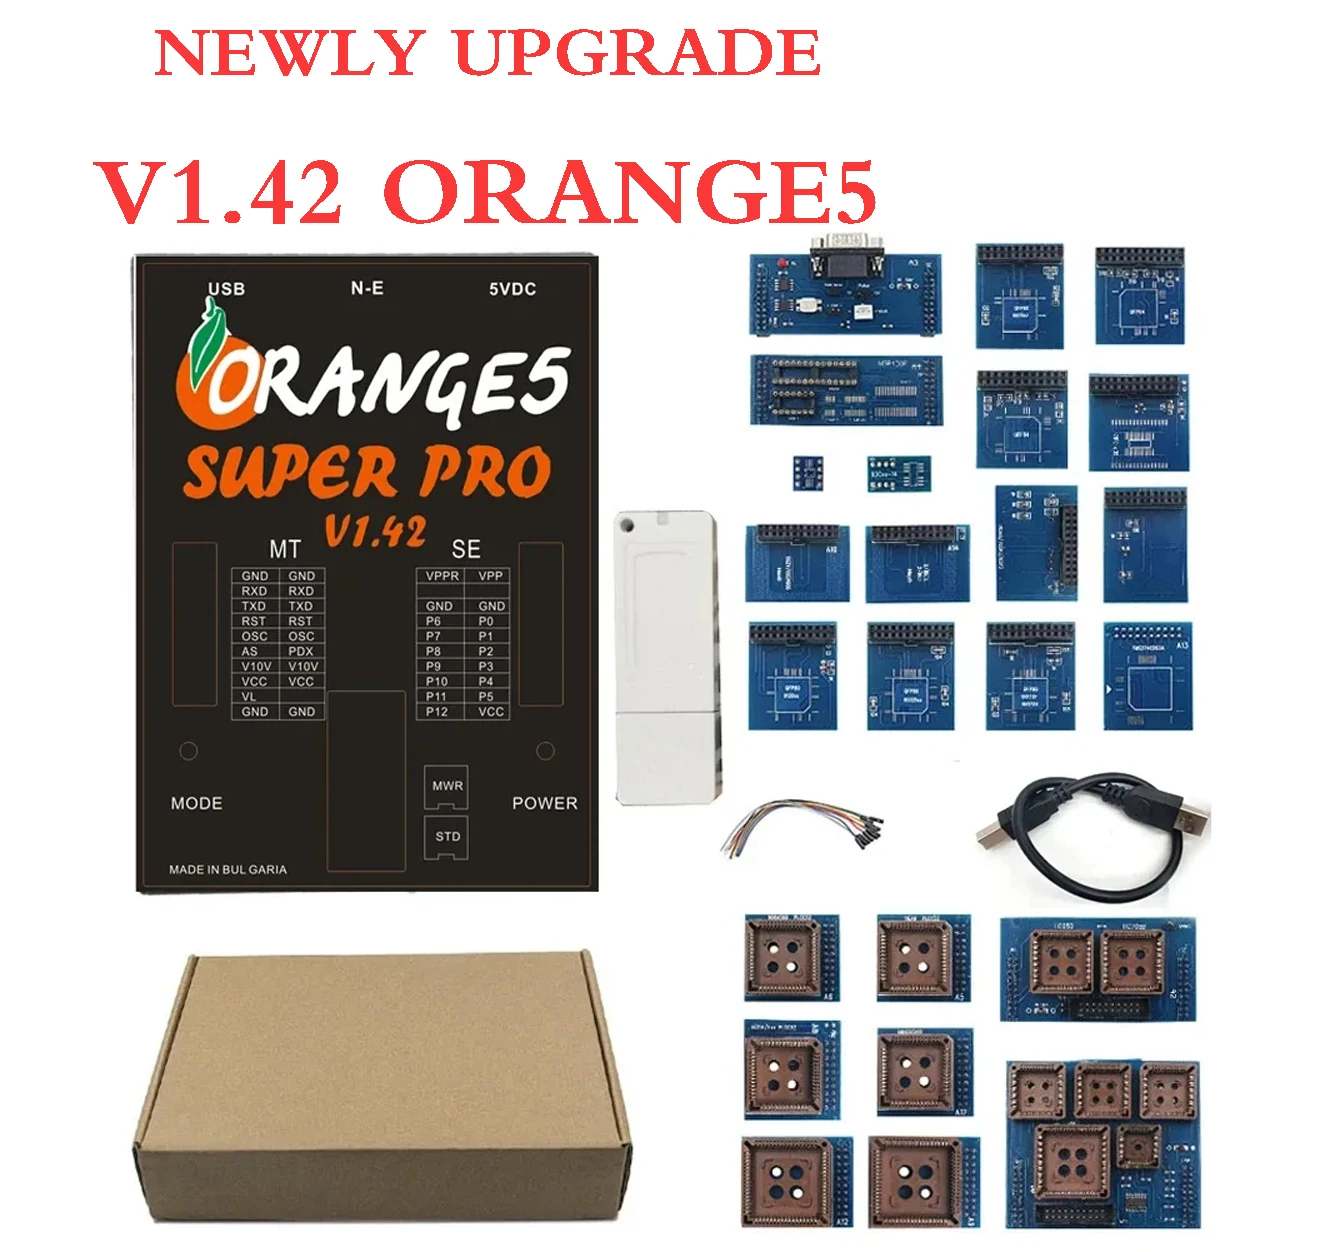 

Программатор Orange5 Super Pro V1.42, обновленный супер-оранжевый программатор с полной активацией, 5 профессиональных ECU программирующих устройств, полная авторизация